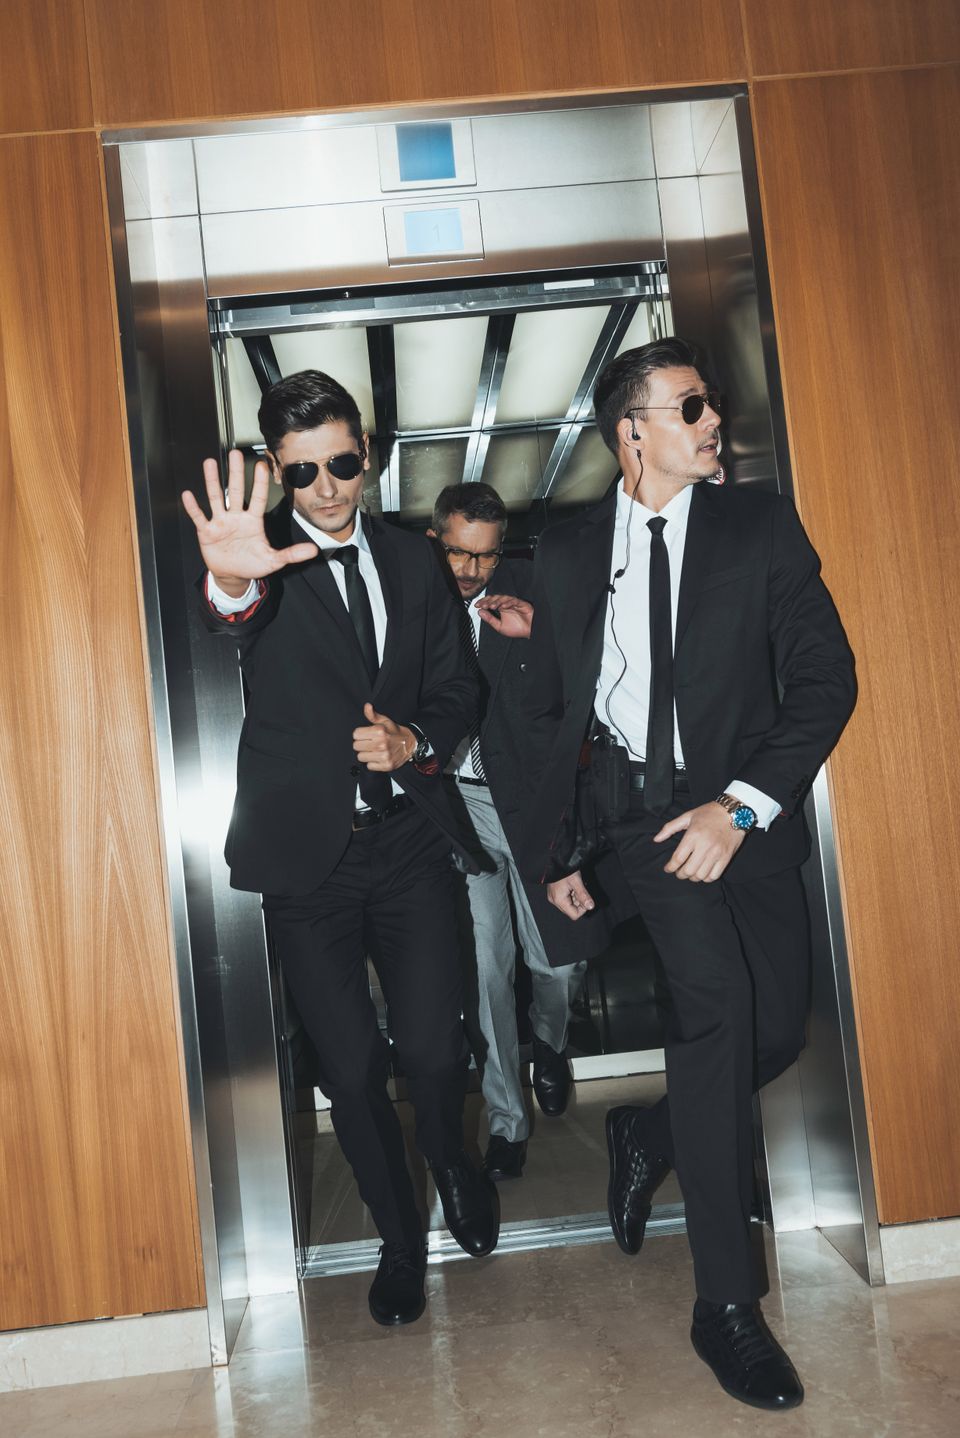 Bodyguards eskorterer mand ud af elevator